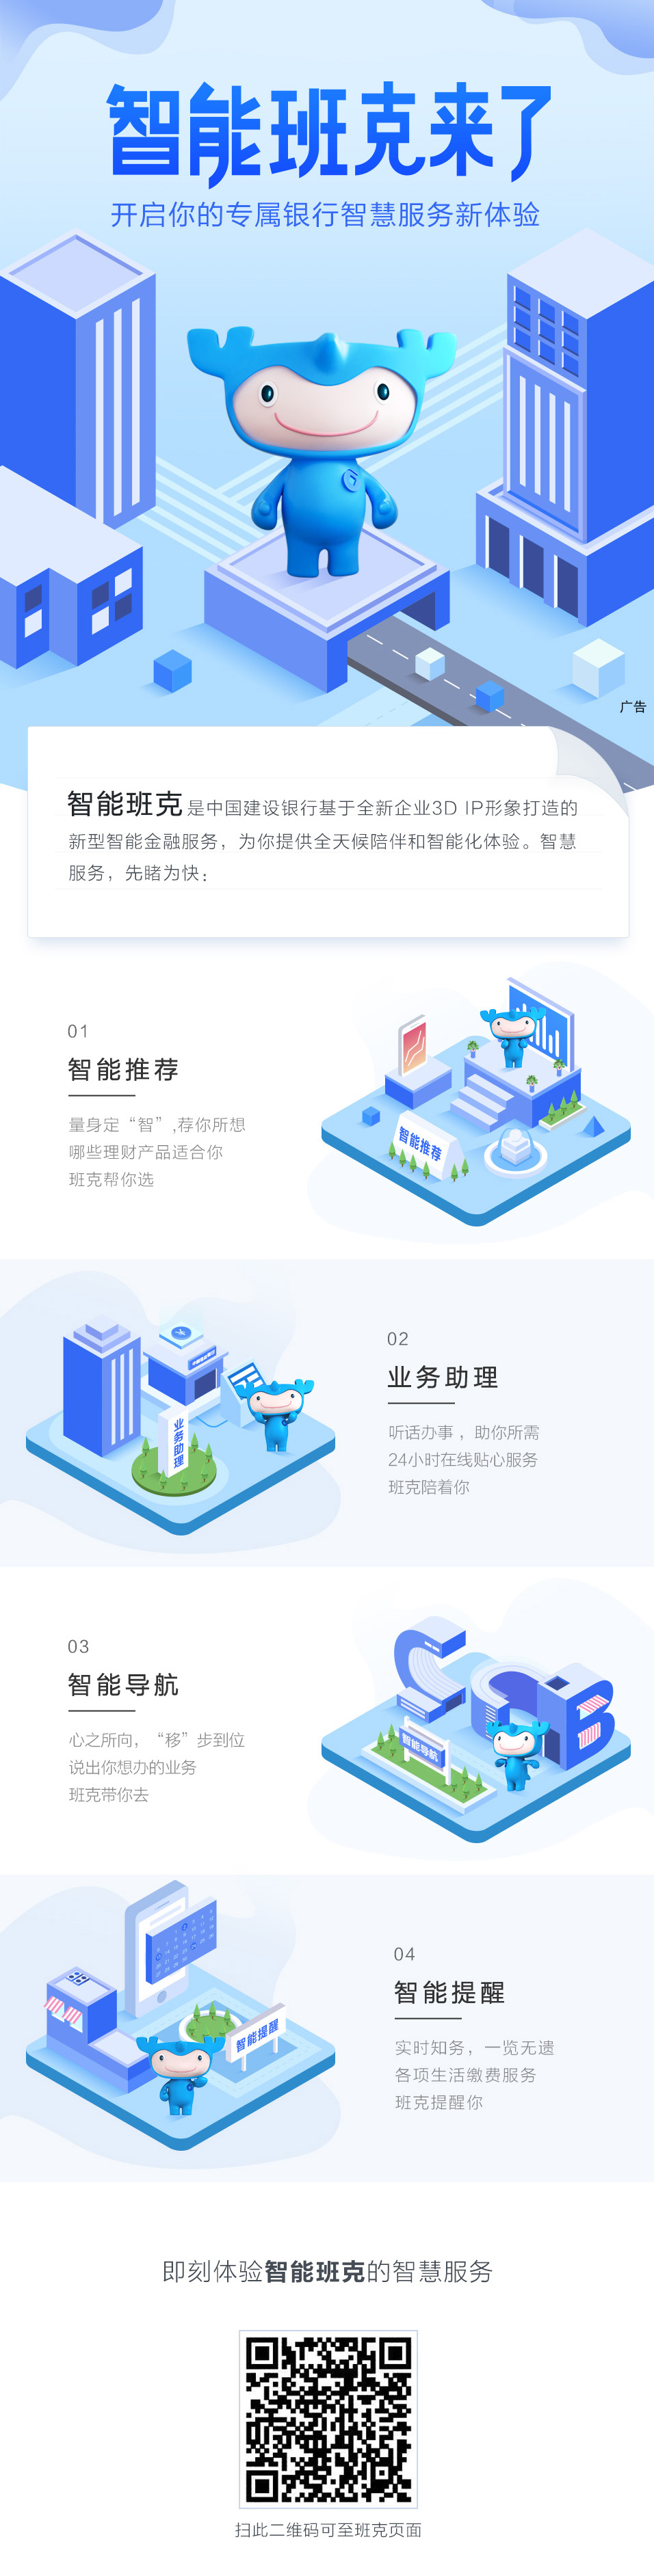 欢迎访问中国建设银行网站_“智能班克来了”.jpg